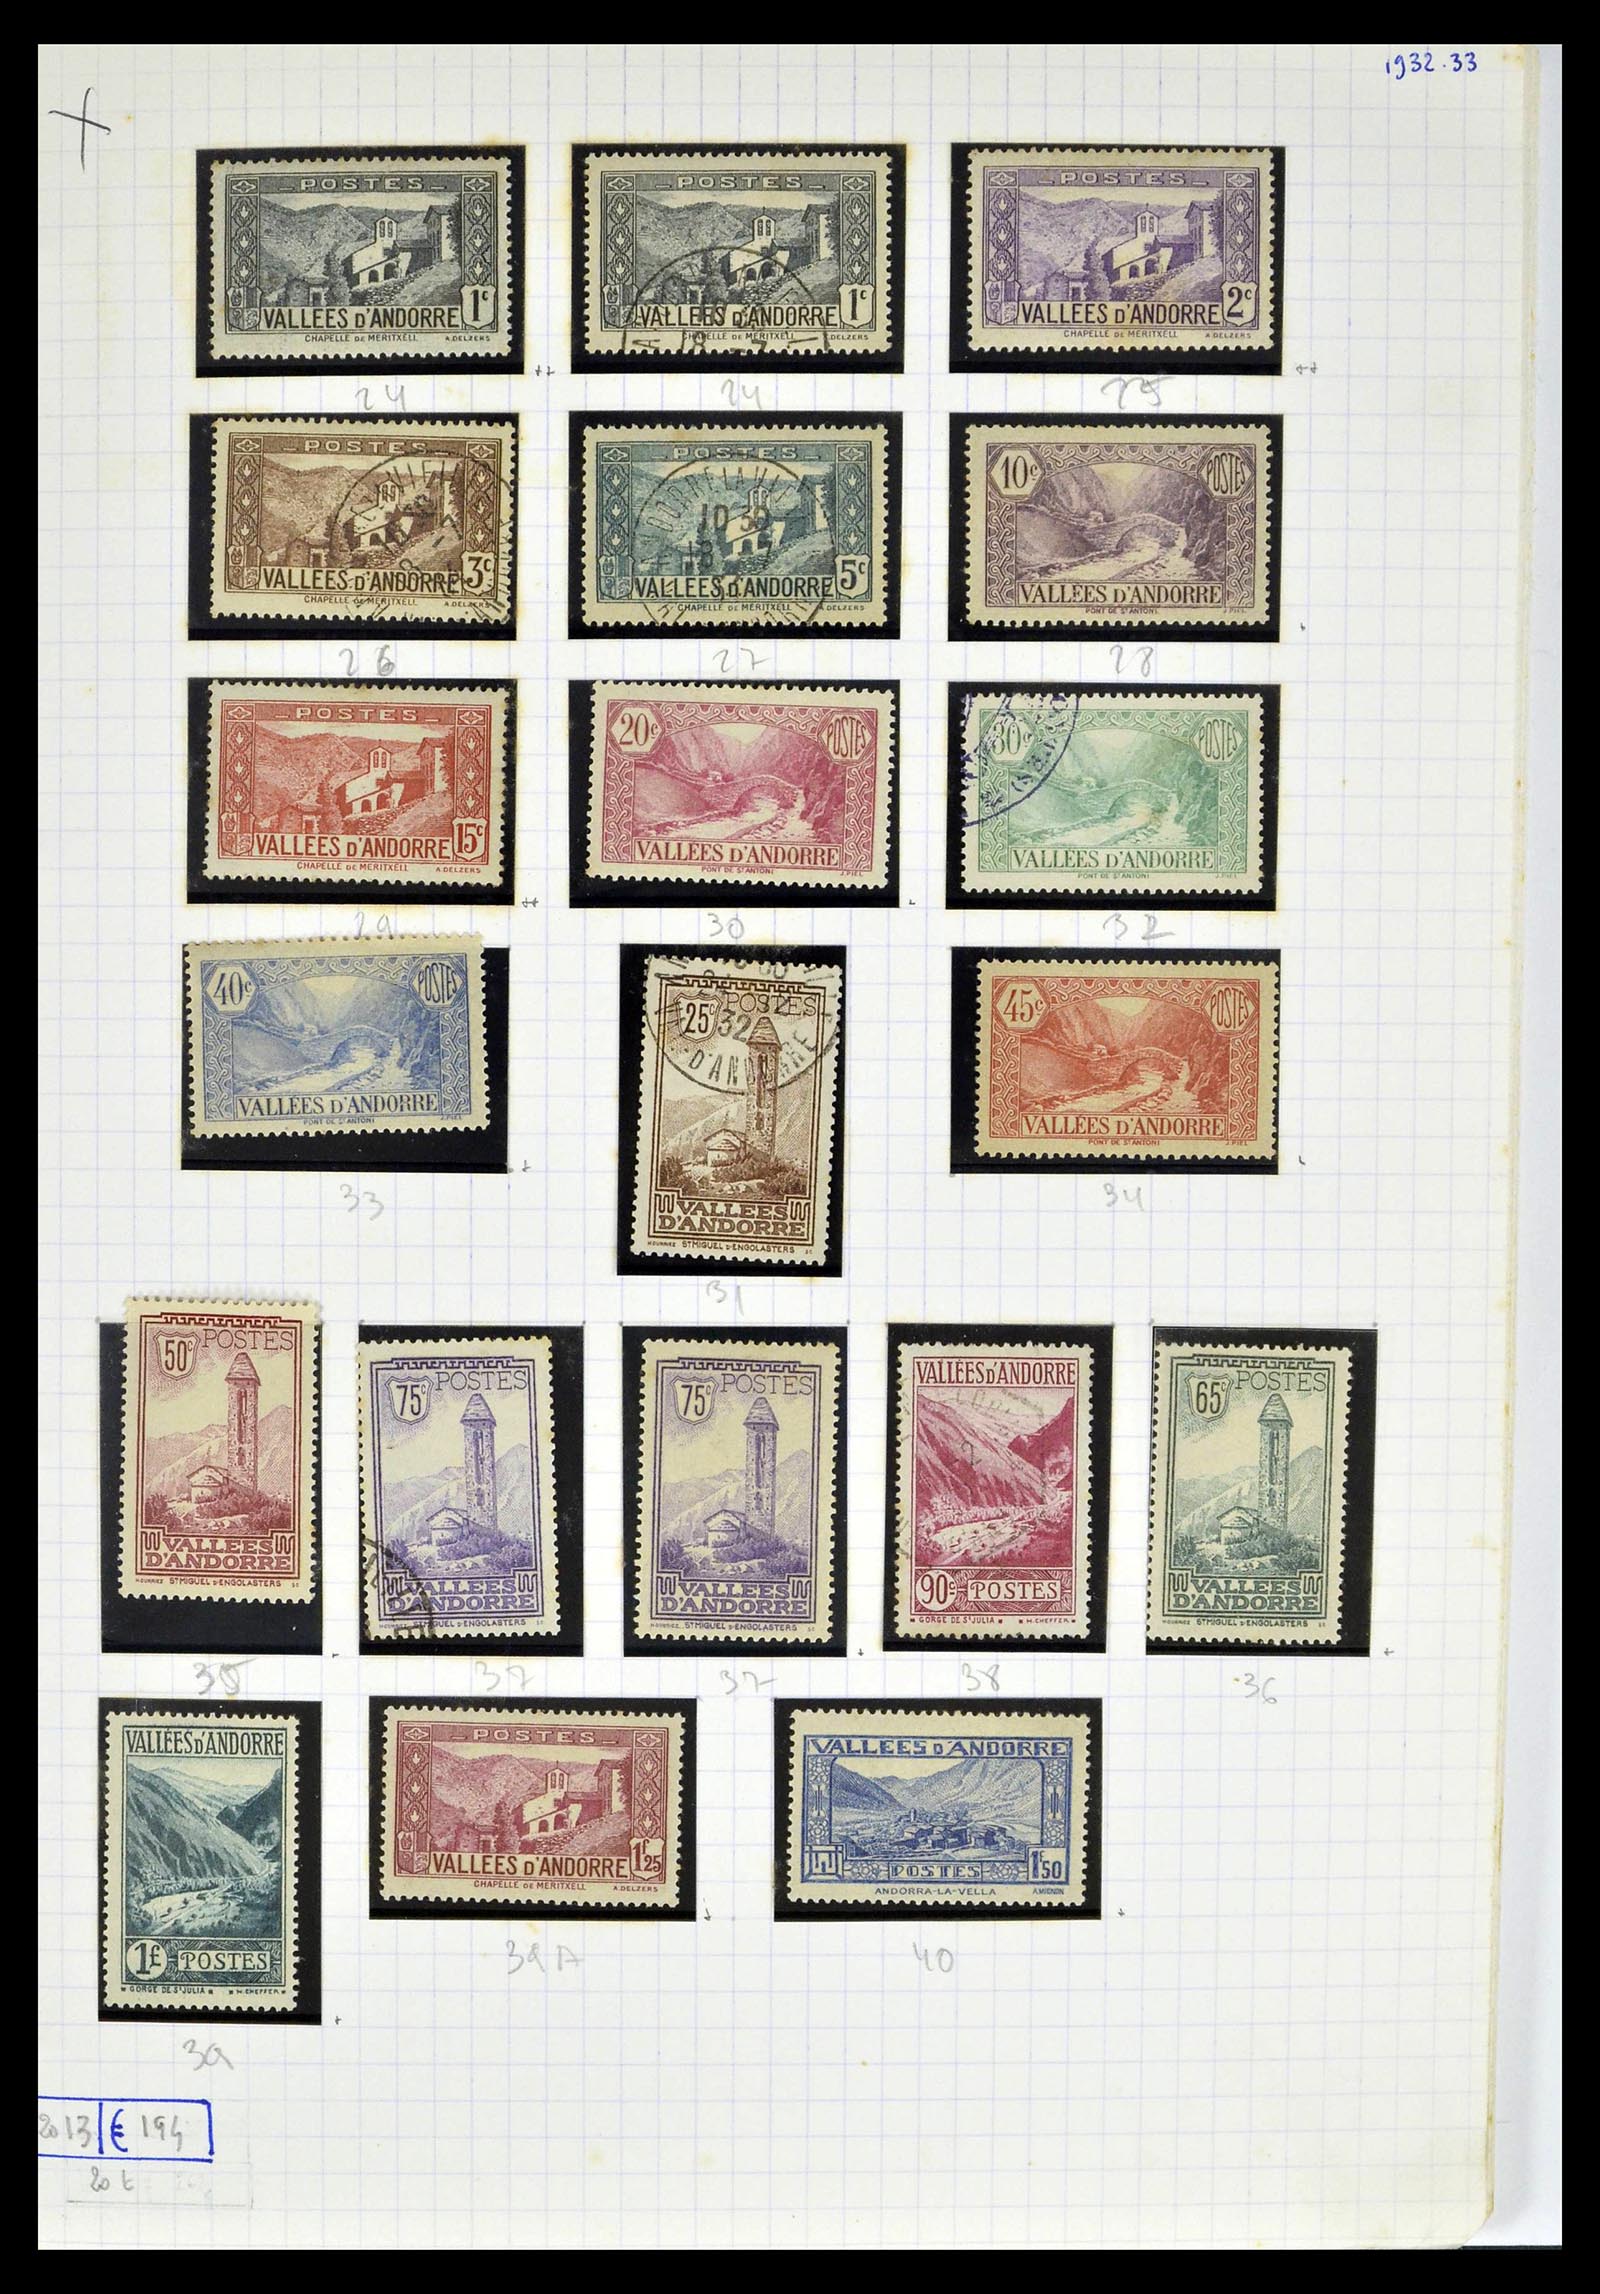 39232 0003 - Postzegelverzameling 39232 Frans Andorra 1931-2013.